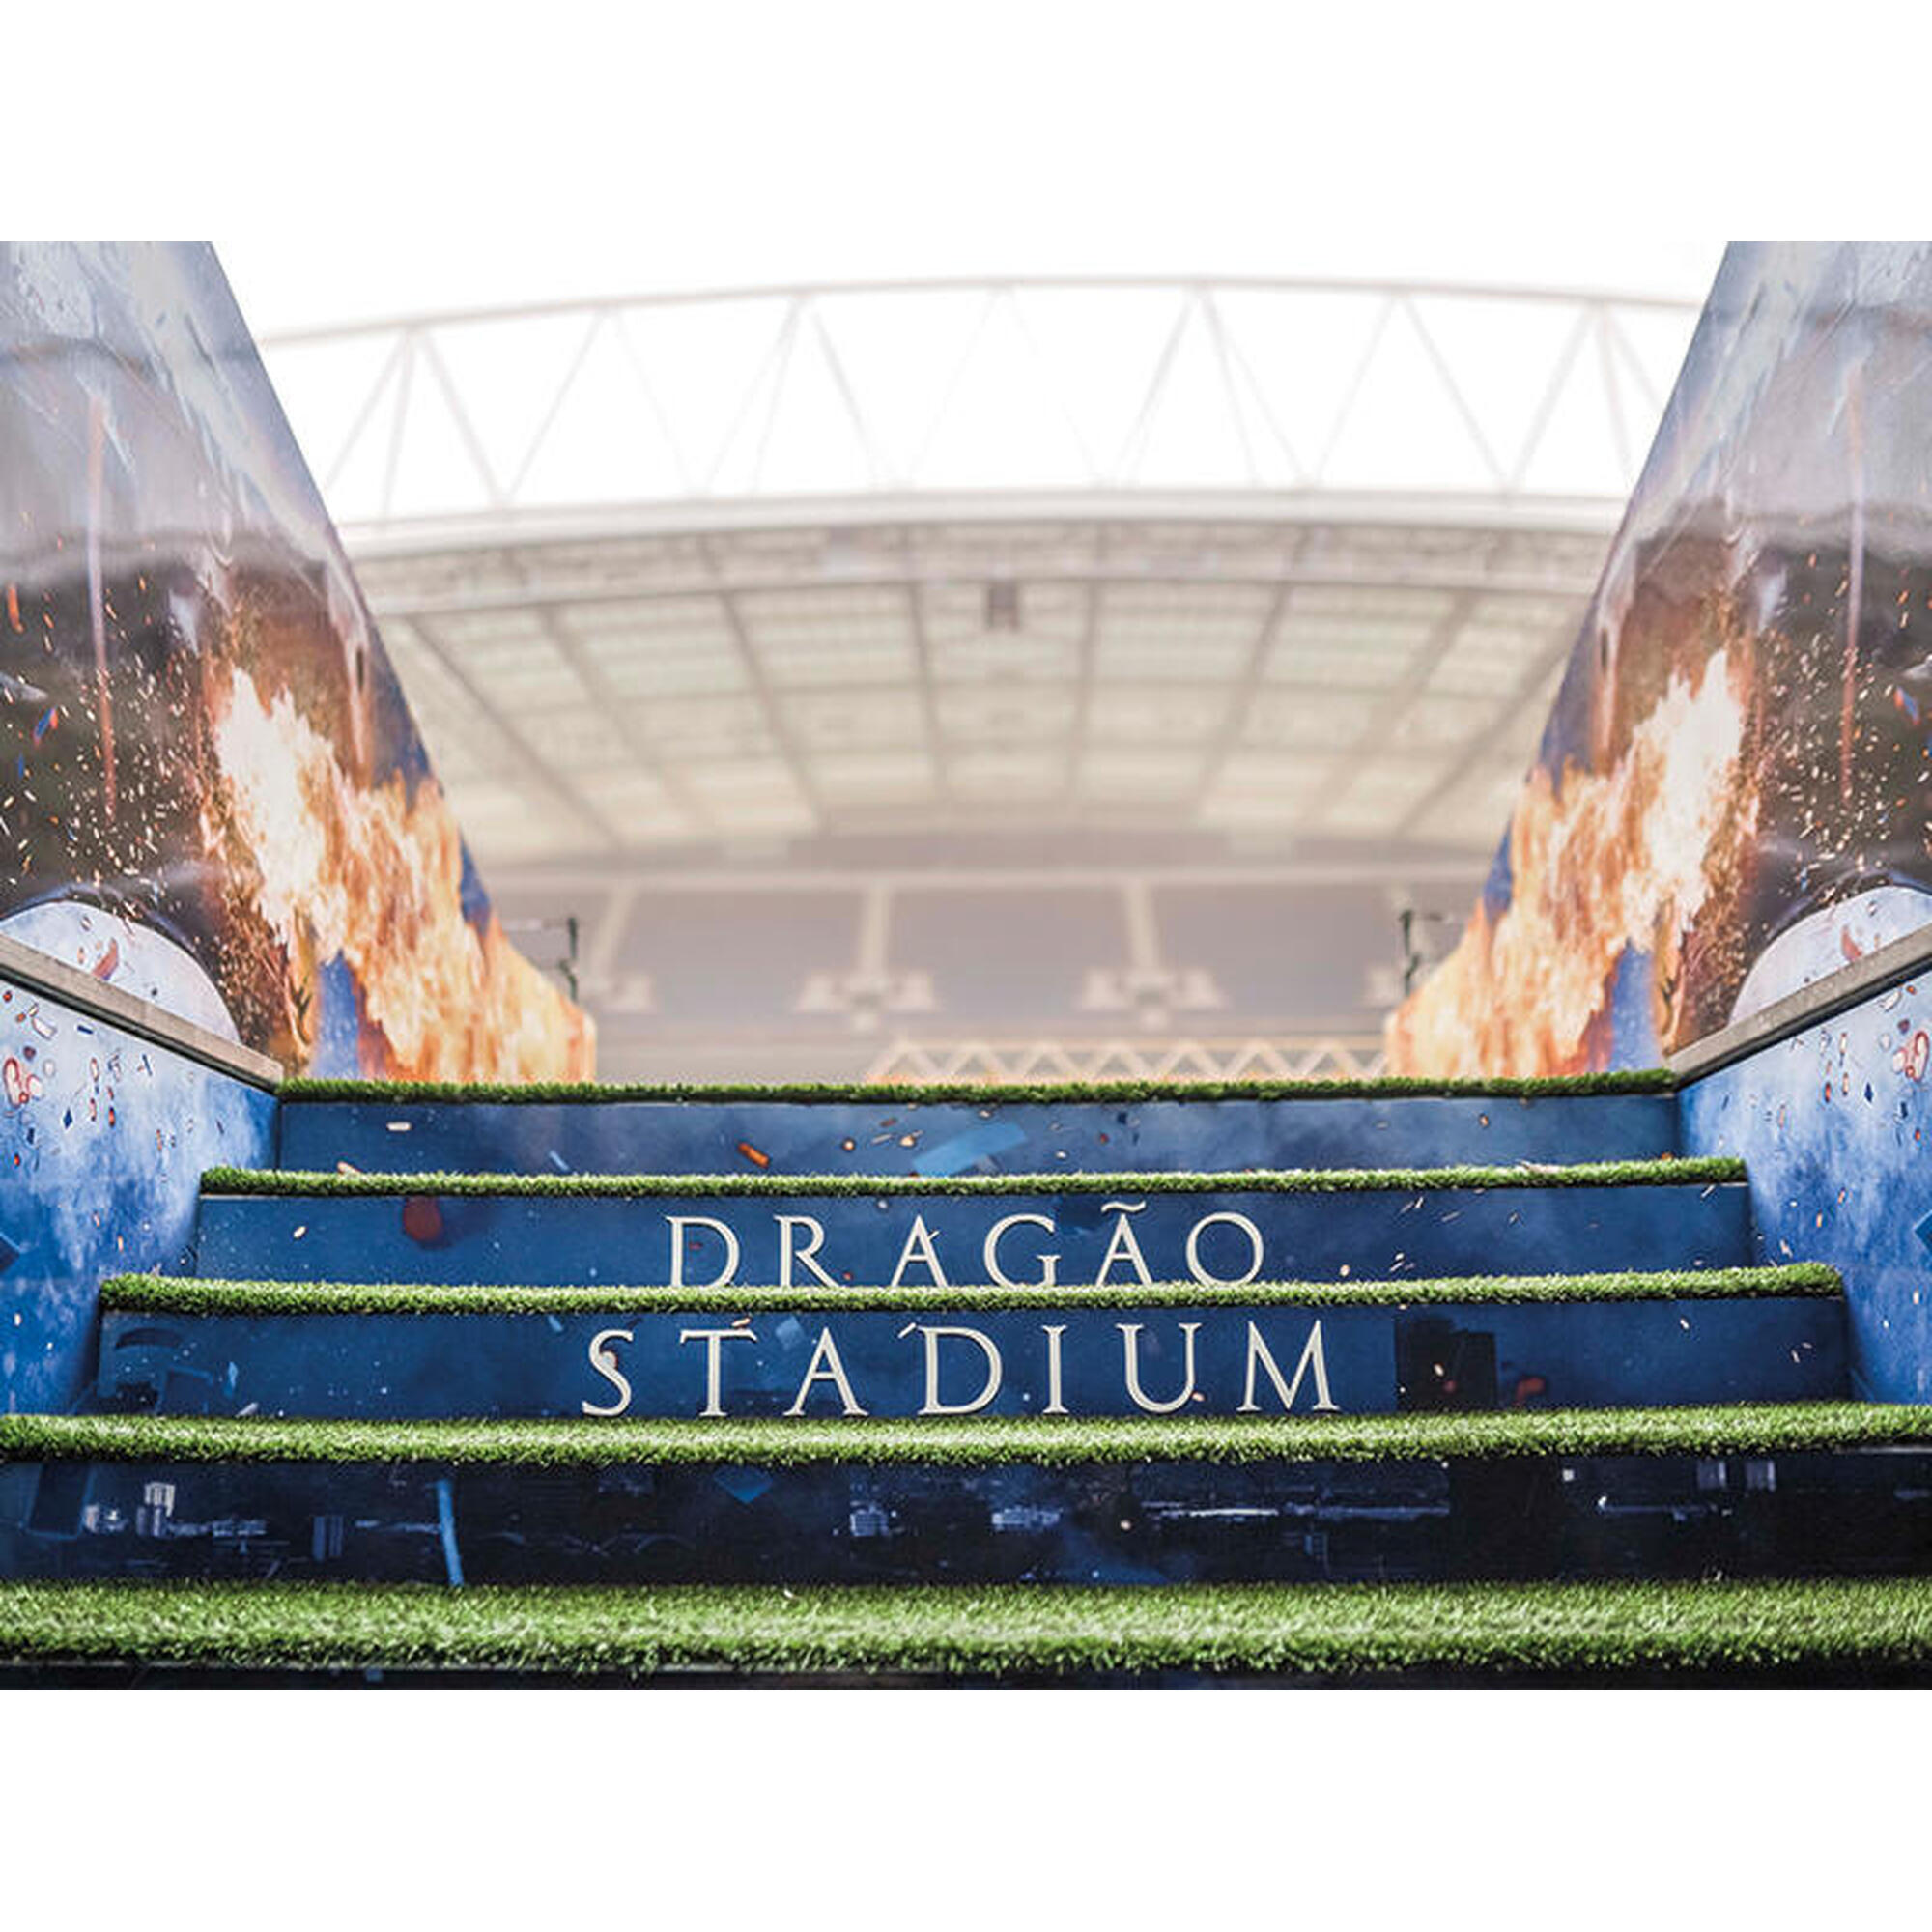 Pack Presente Odisseias - Futebol Clube do Porto | Visita ao Estádio e Museu